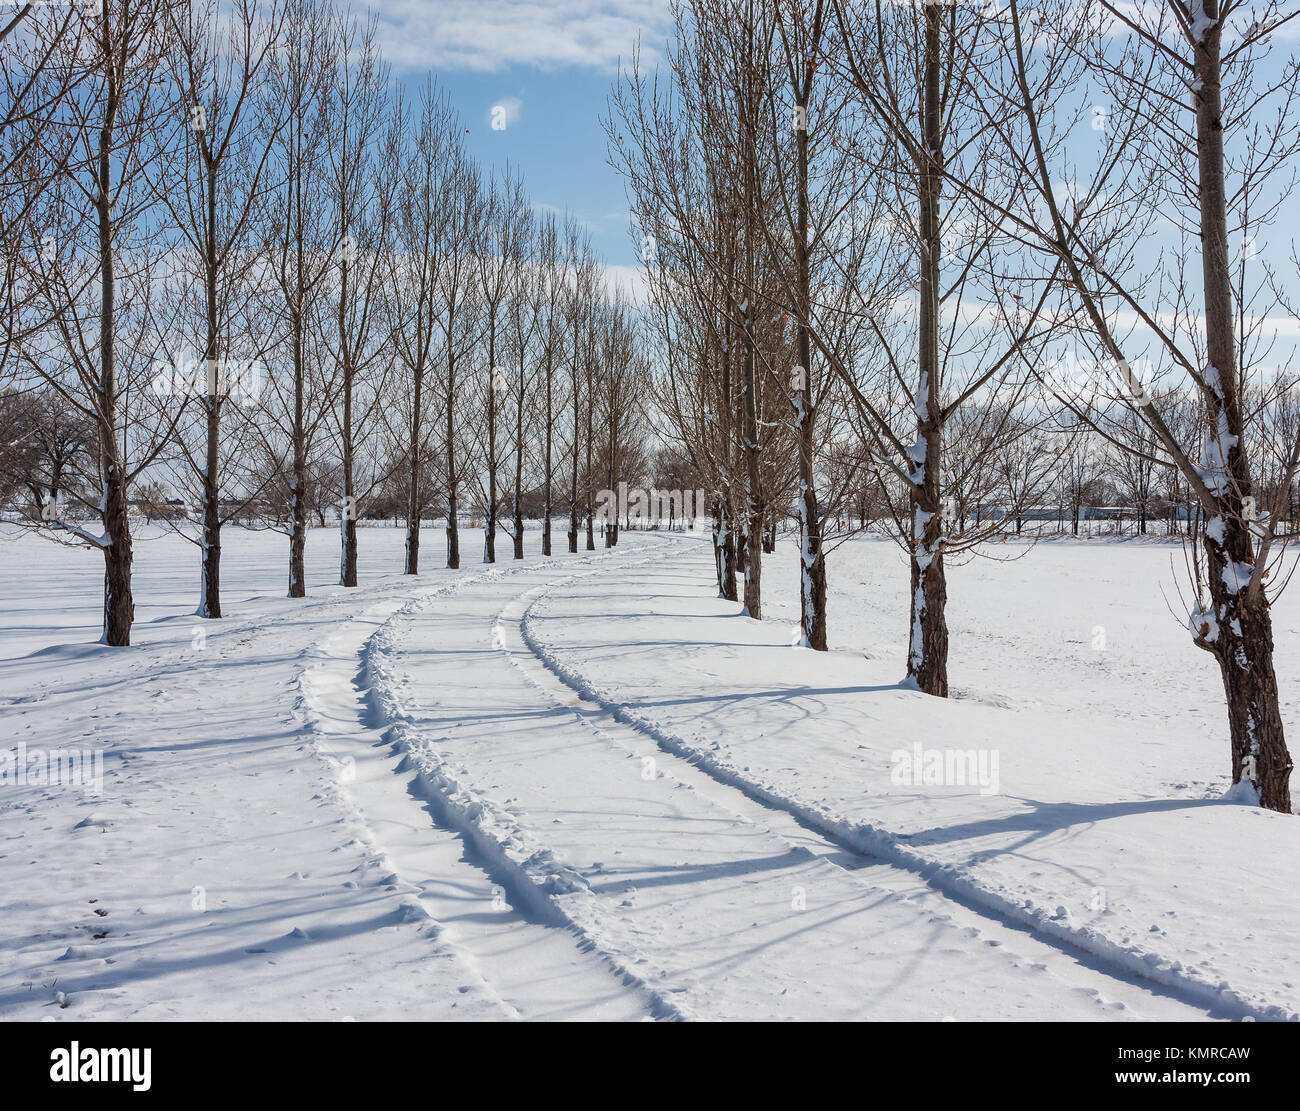 Fresco en pistas bordeadas de árboles cubiertos de nieve duro Foto de stock